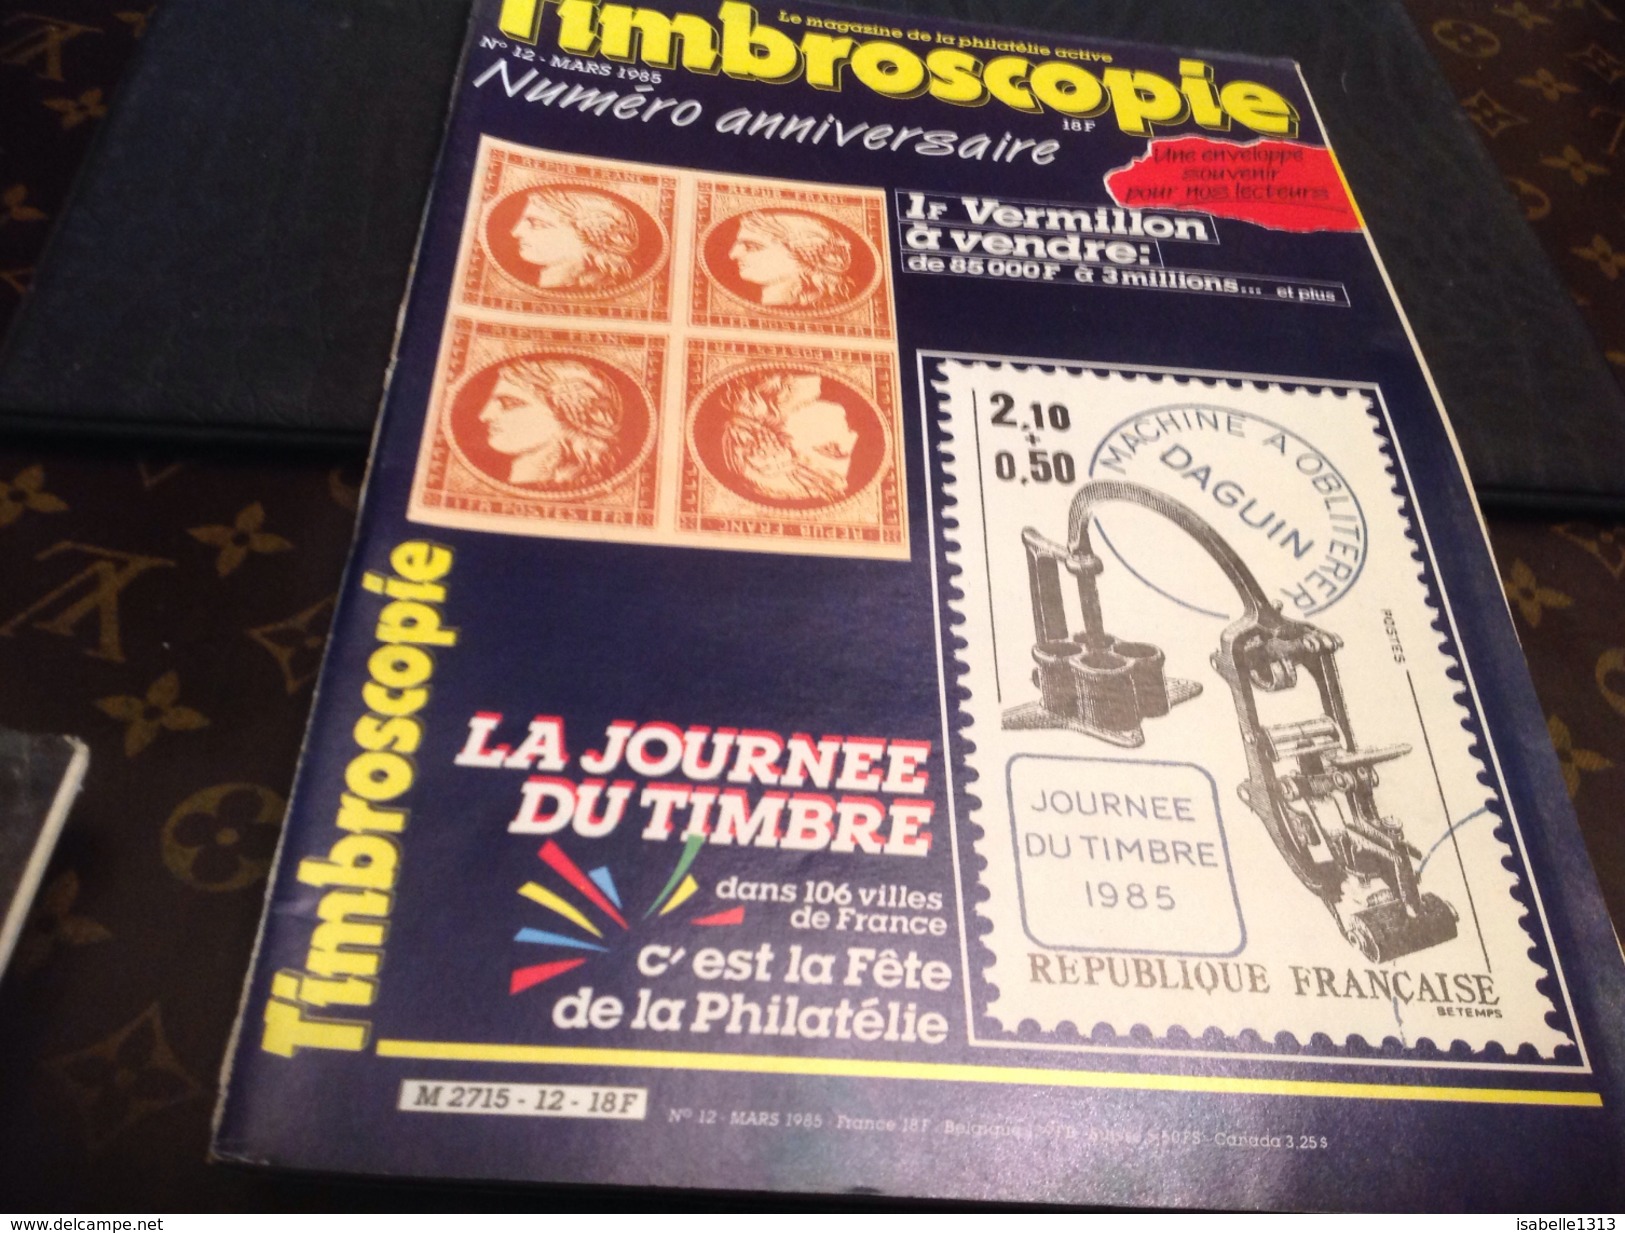 Timbroscopie 1985  Numéro Anniversaire - French (until 1940)